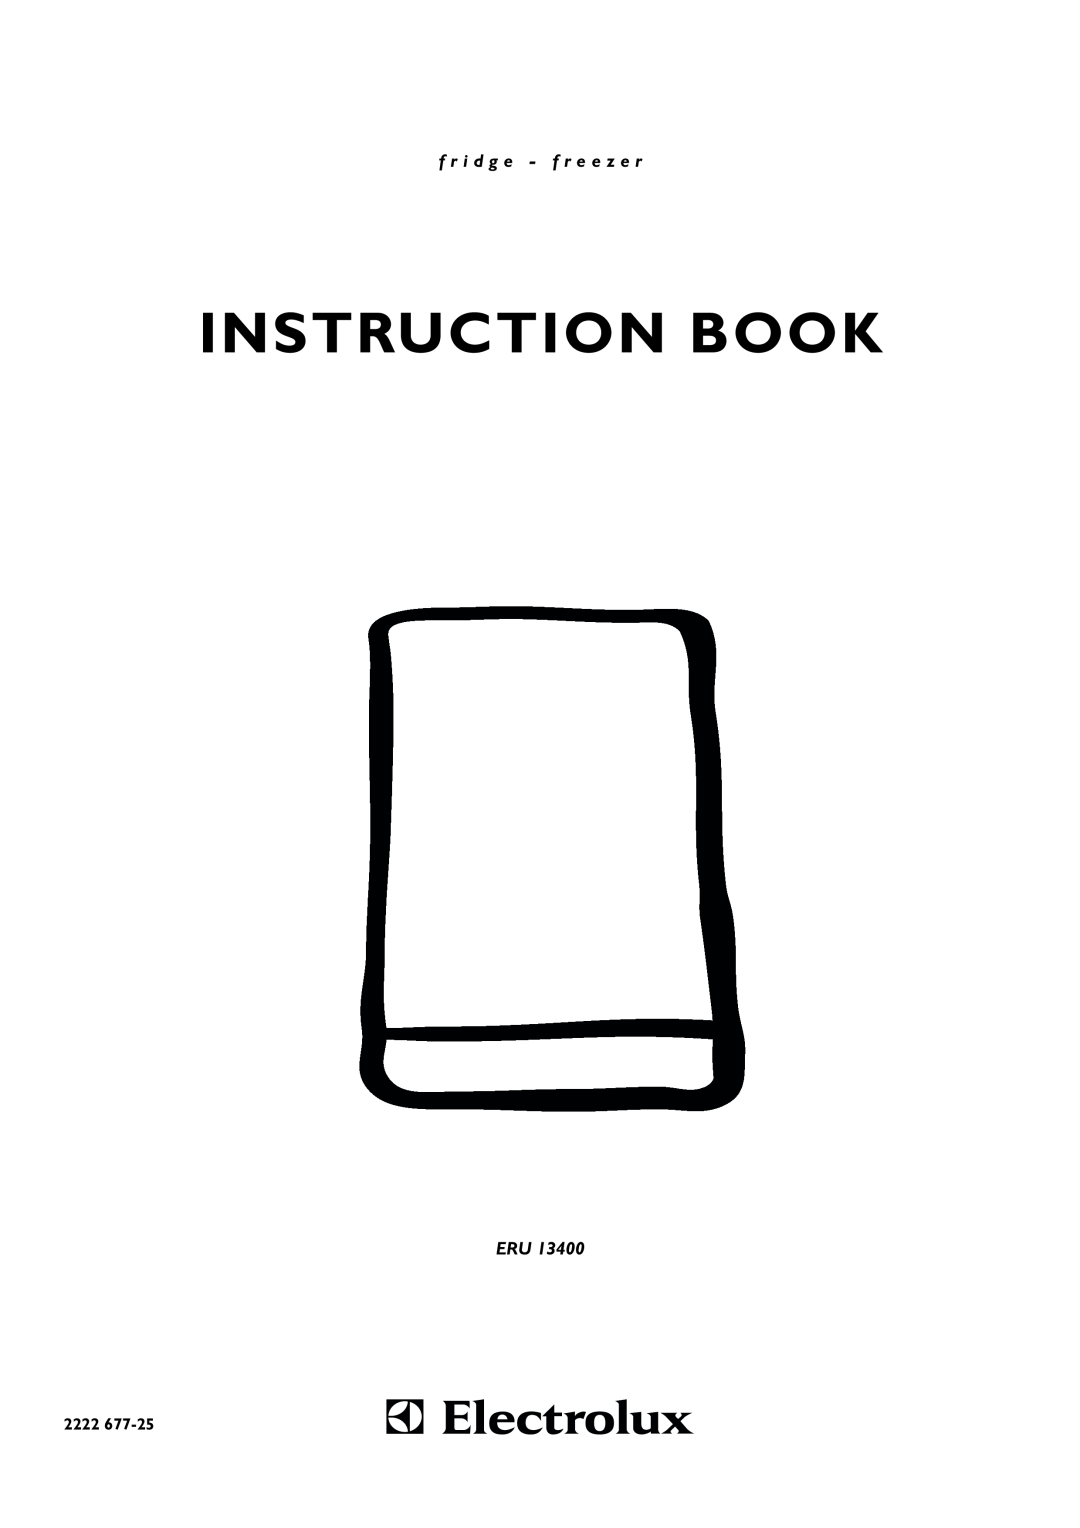 Electrolux ERU 13400 manual Instruction Book, f r i d g e - f r e e z e r, 2222 